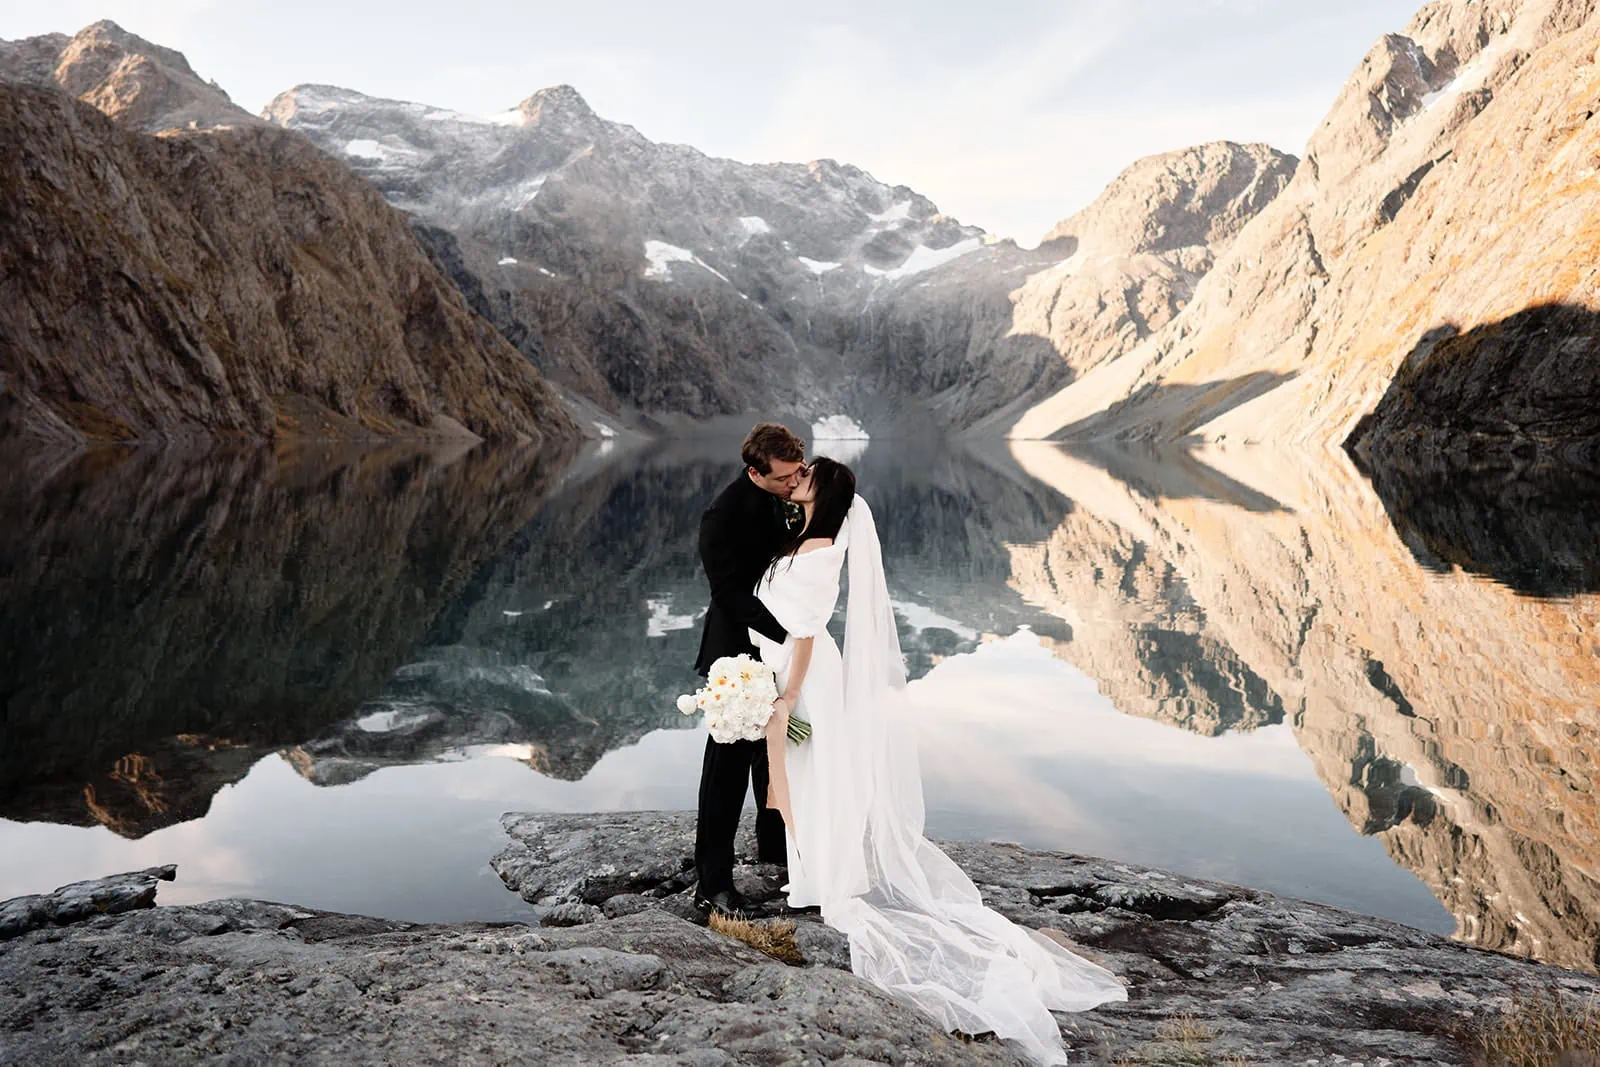 Queenstown New Zealand Elopement Wedding Photographer - The Ultimate Queenstown Elopement Wedding Guide in New Zealand.